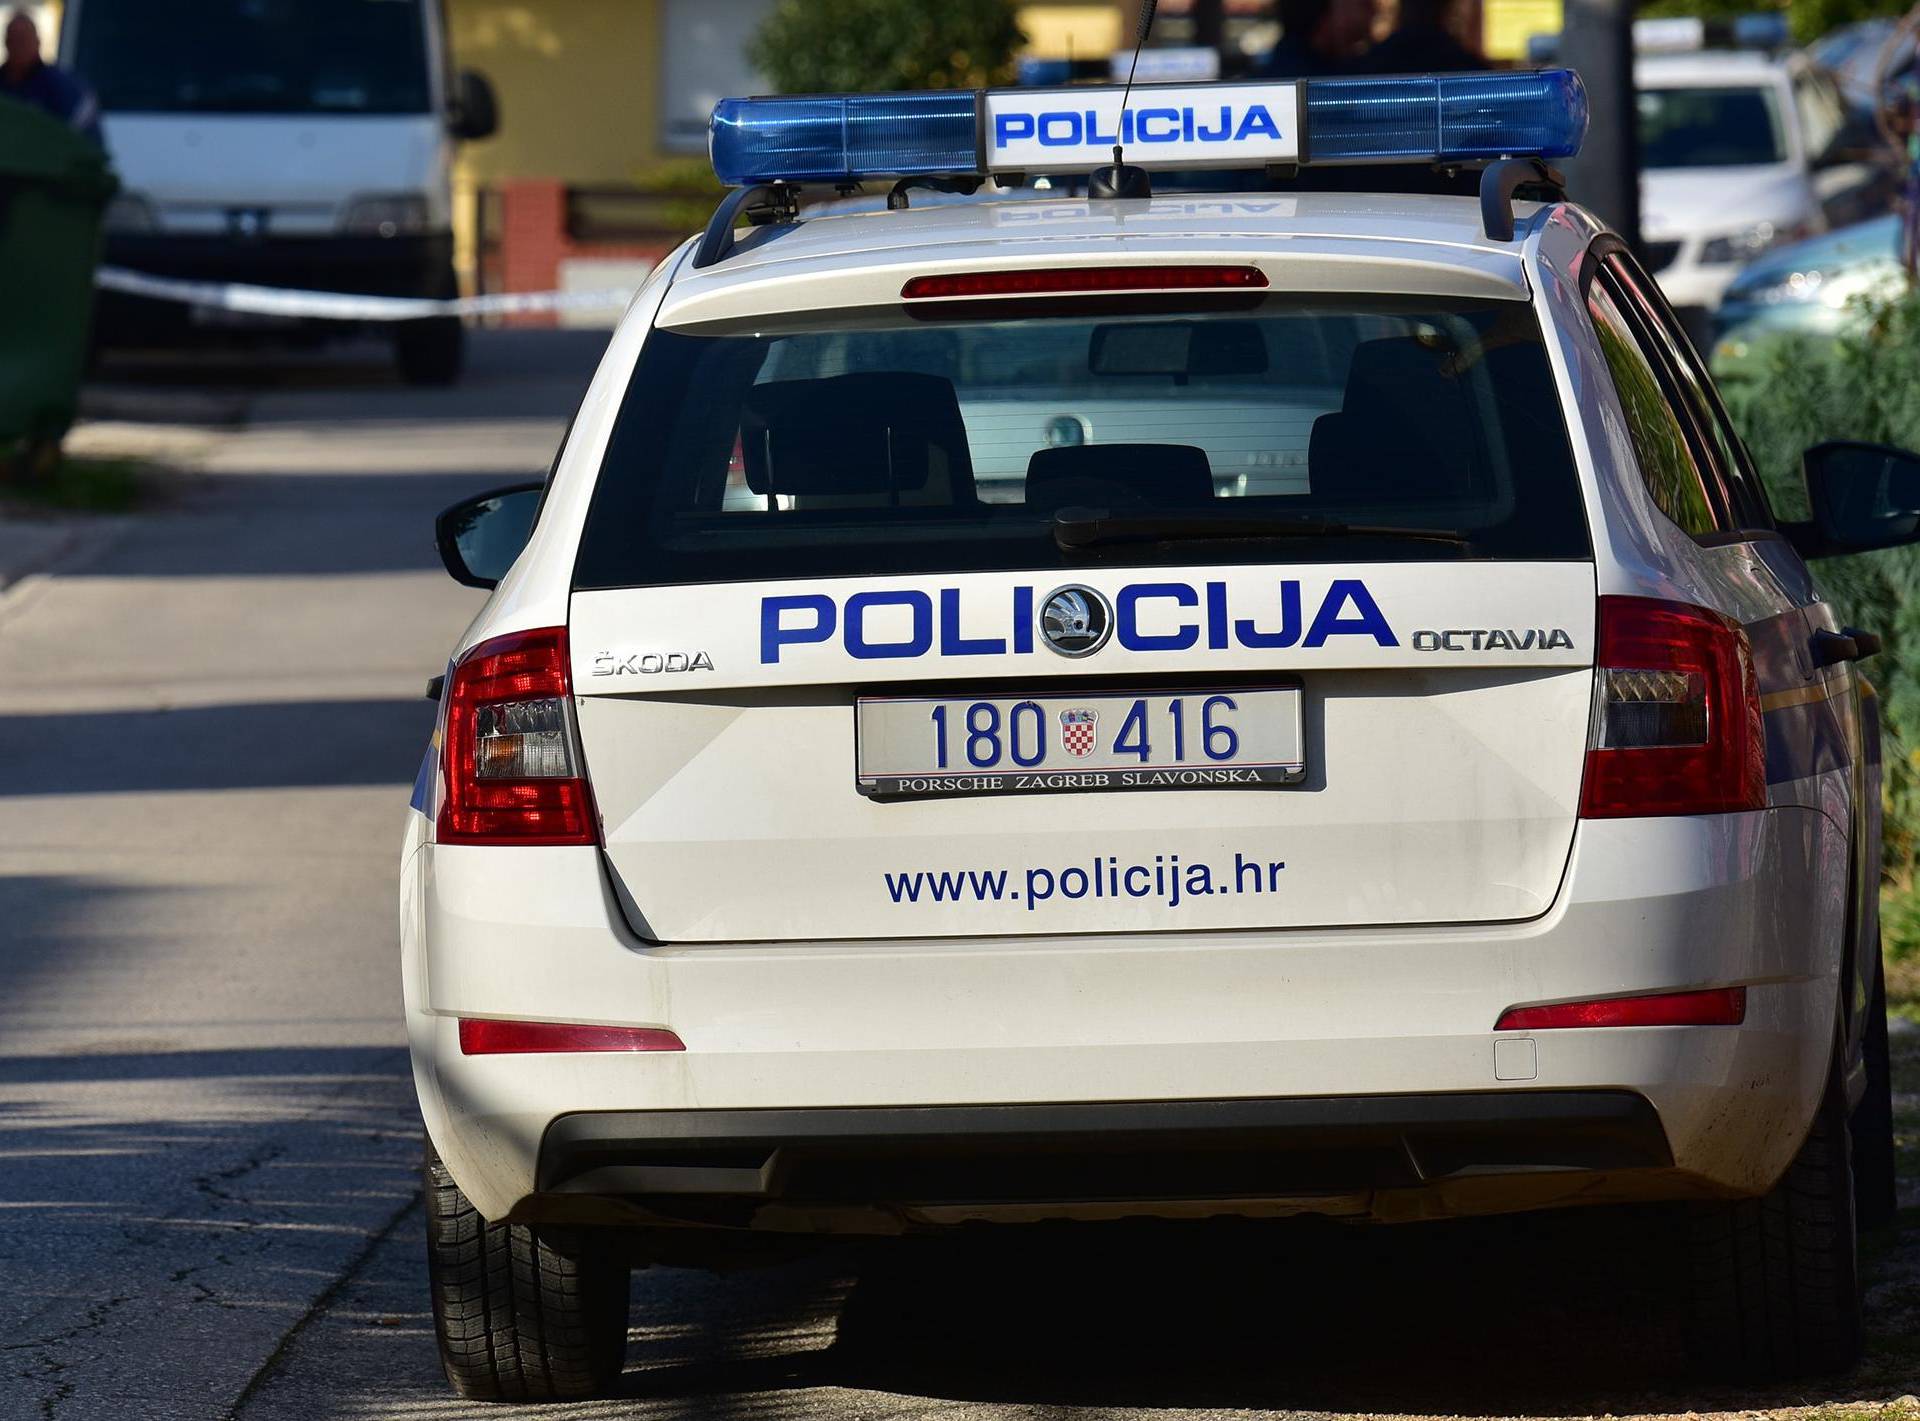 Manijak napada žene u Splitu: Prijavljena su već četiri slučaja